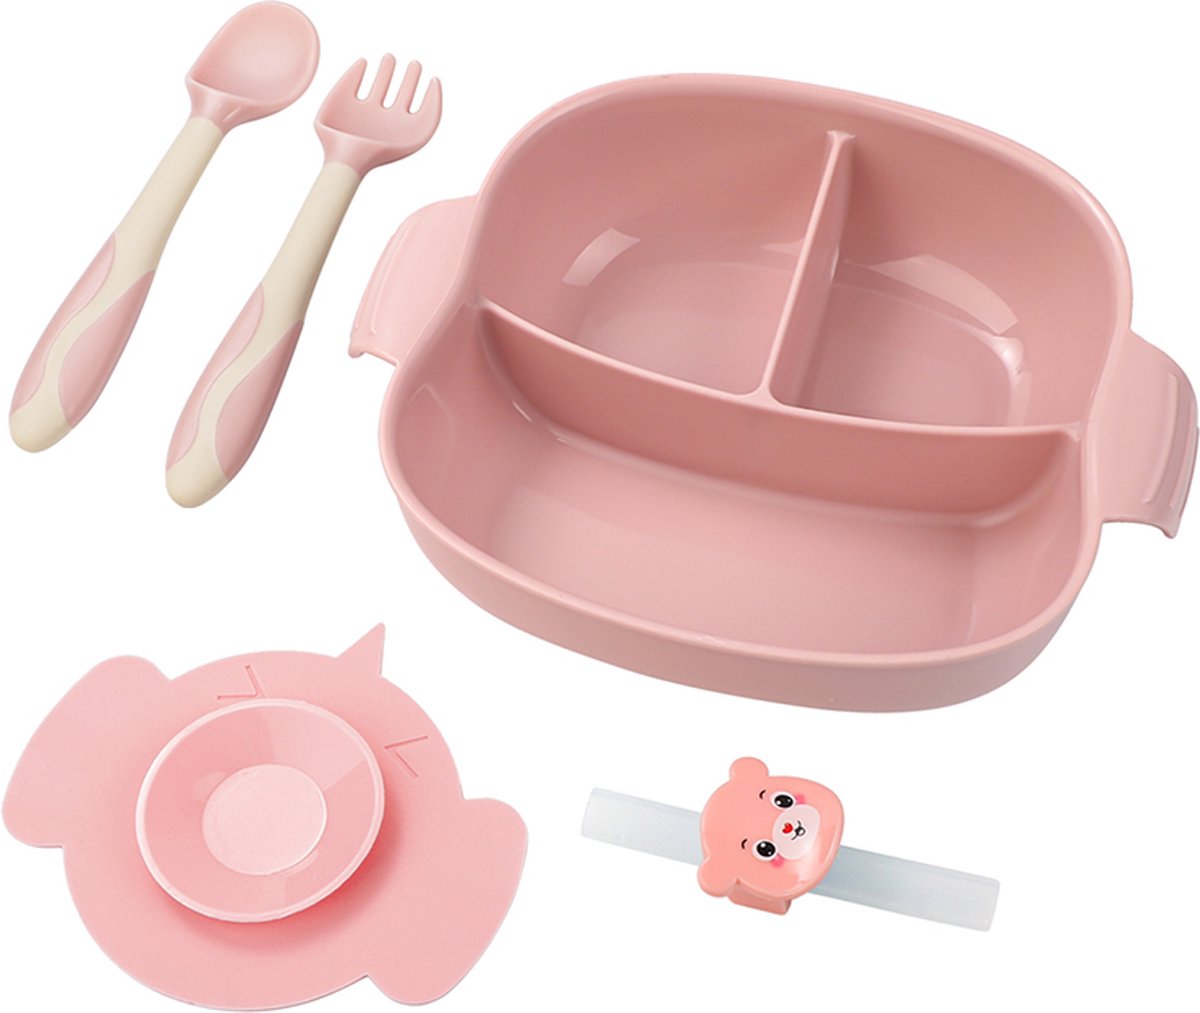 4-delig Plastic Servies Set Roze - Plastic Servies Set - Babyservies - Kinderservies - Baby Bord Zuignap - Onbreekbaar